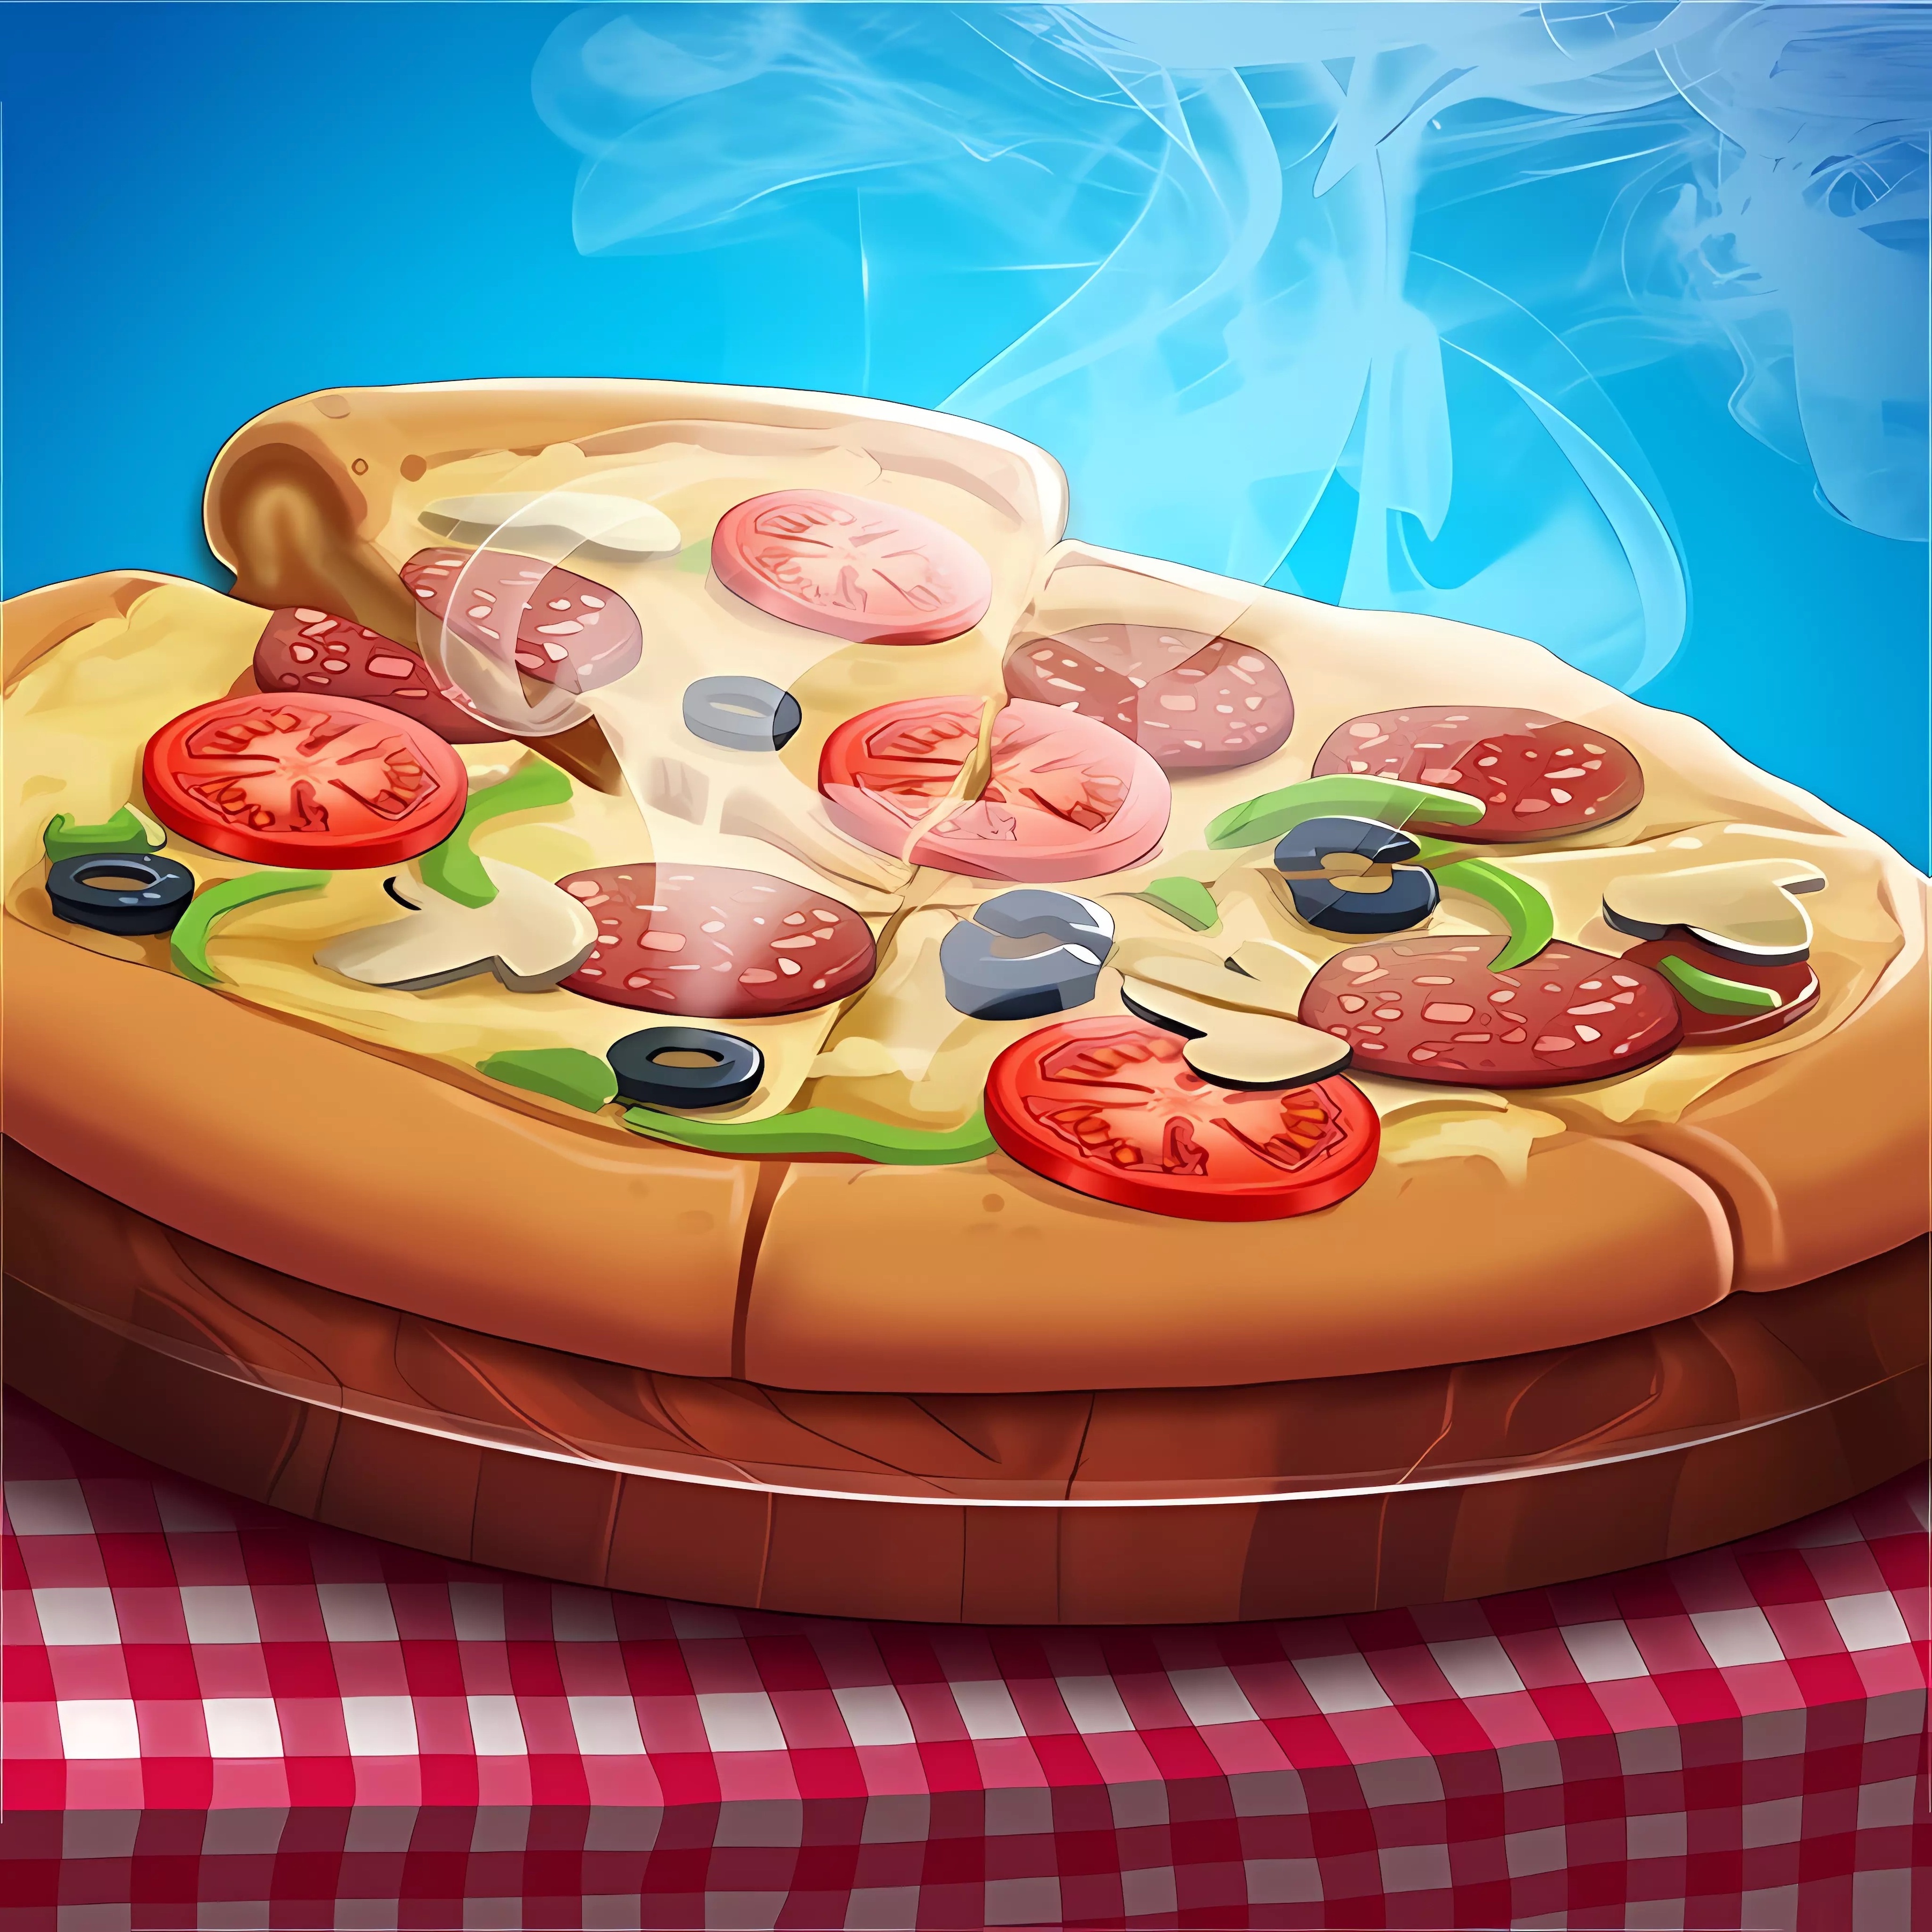 пицца играть онлайн бесплатно полная версия фото 102